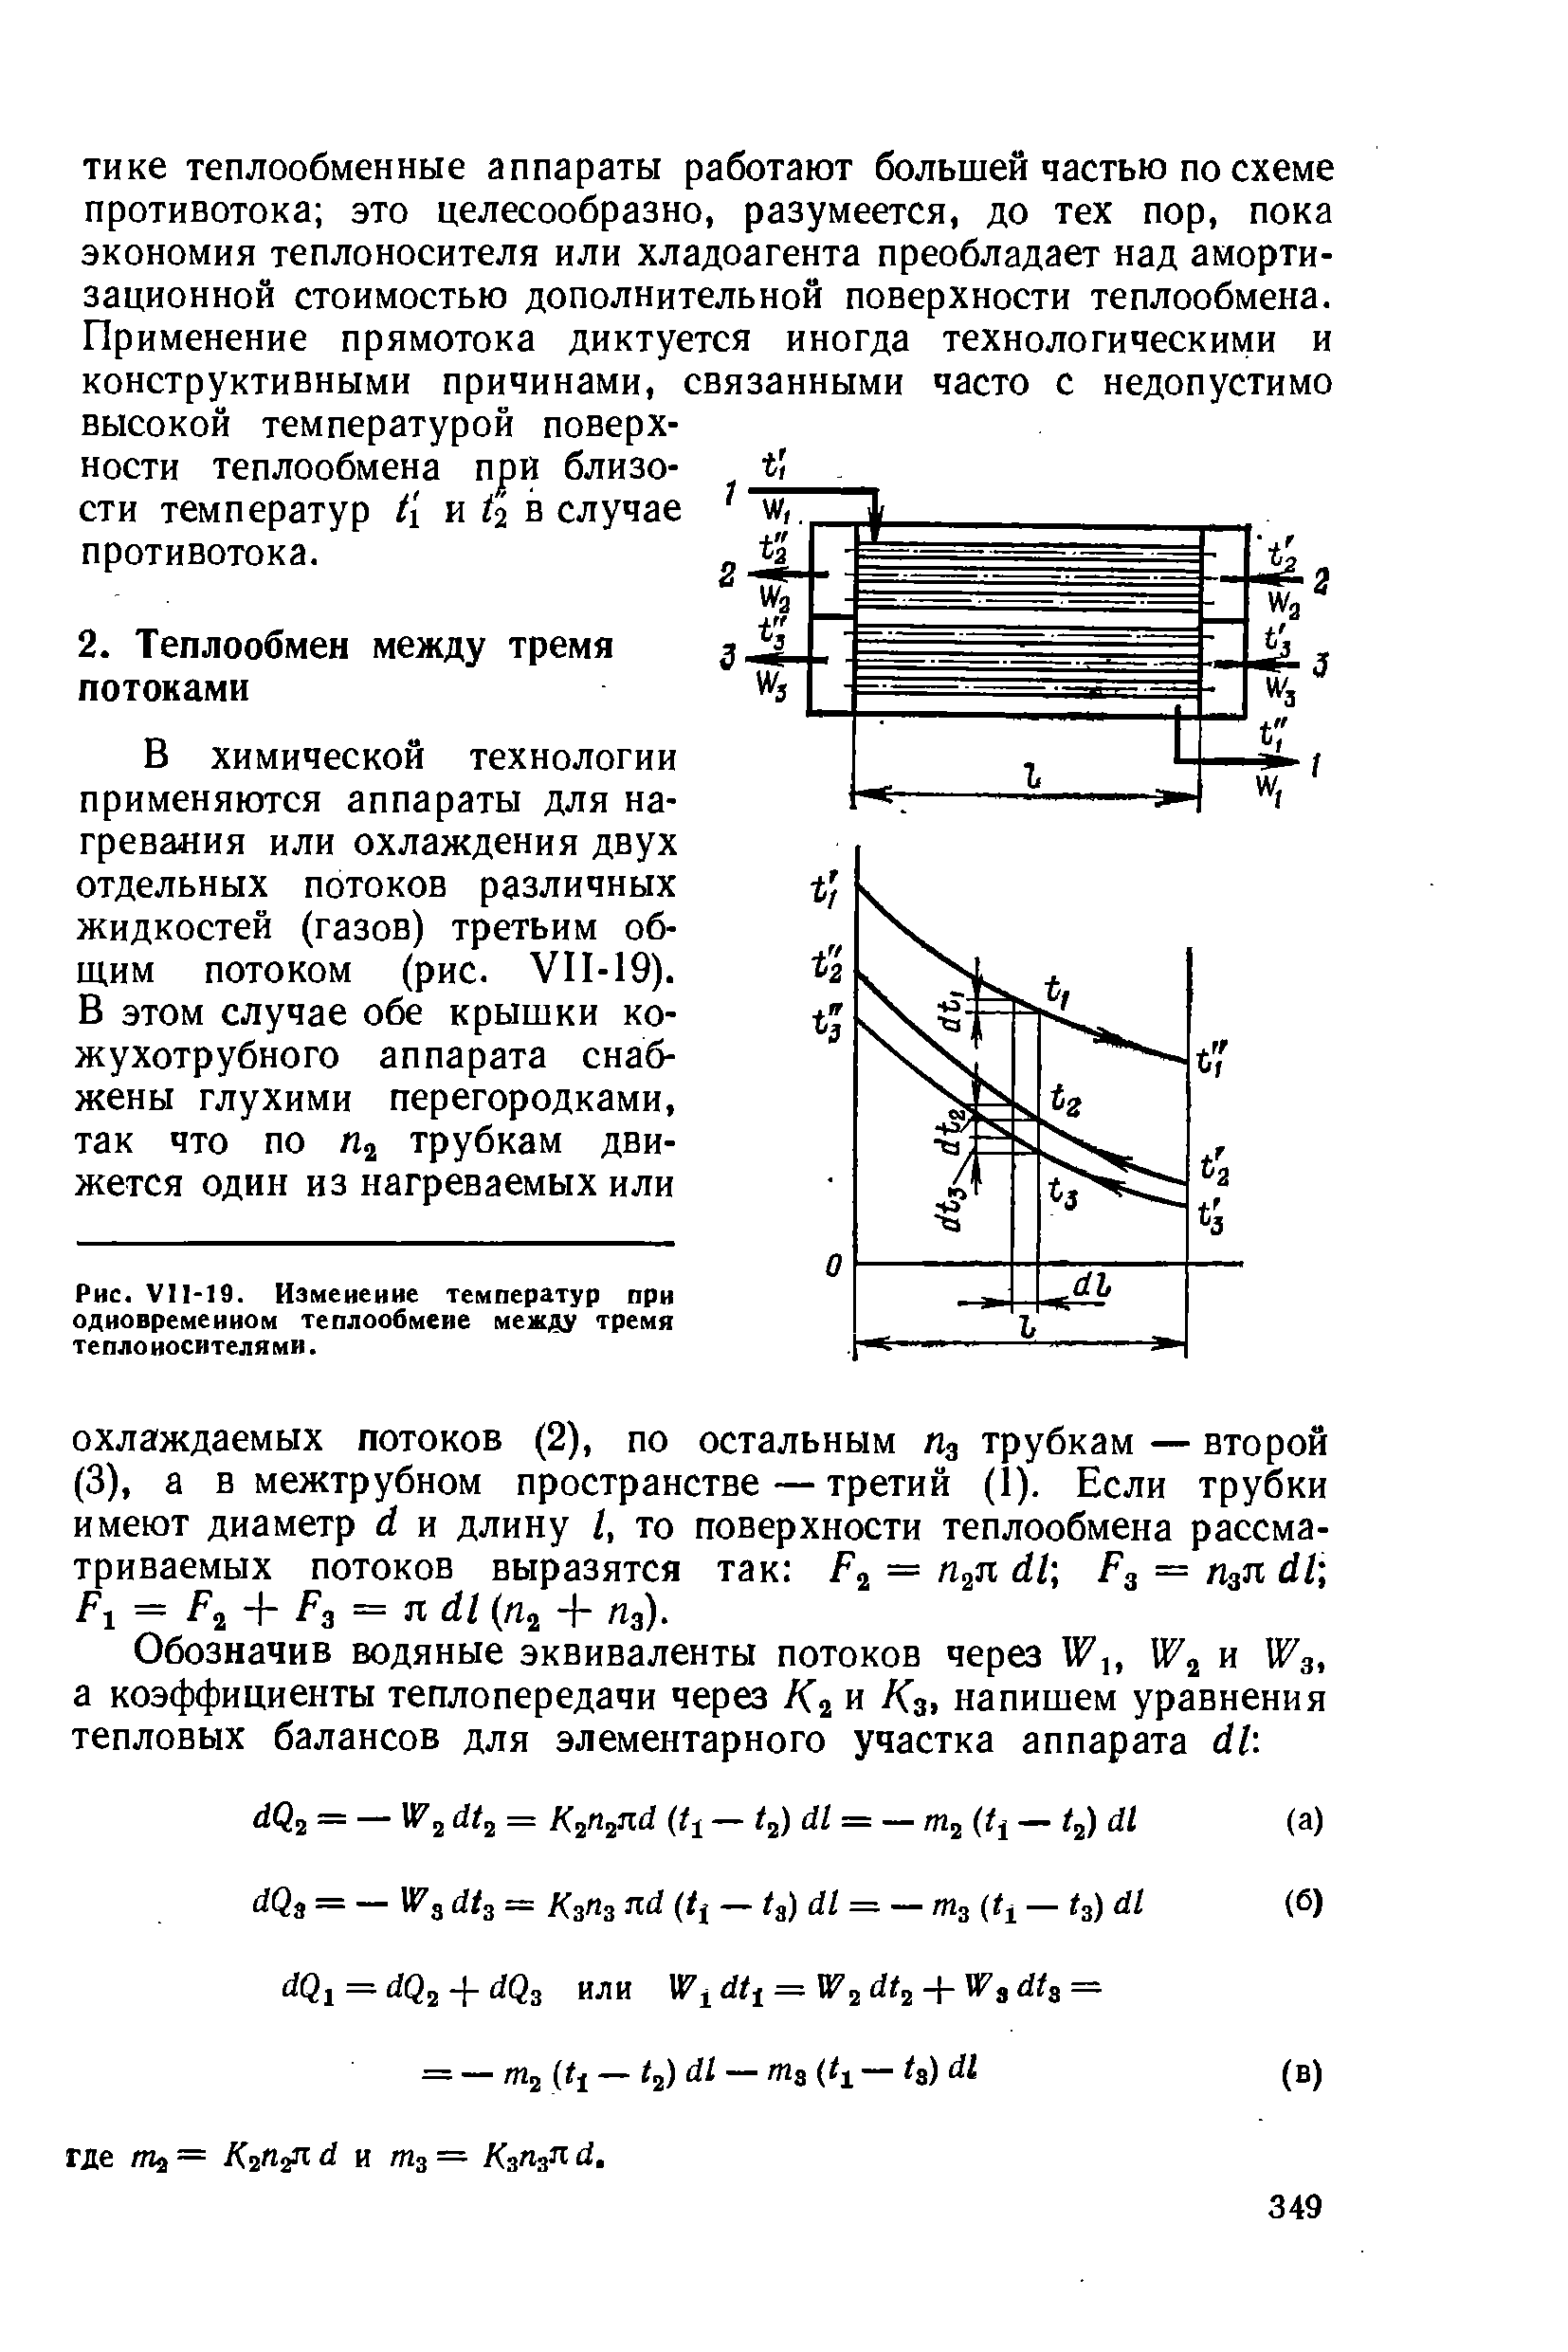 Обозначив юдяные эквиваленты потоков через Wx, и а и Wз, а коэффициенты теплопередачи через и Кэ напишем уравнения тепловых балансов для элементарного участка аппарата 11.